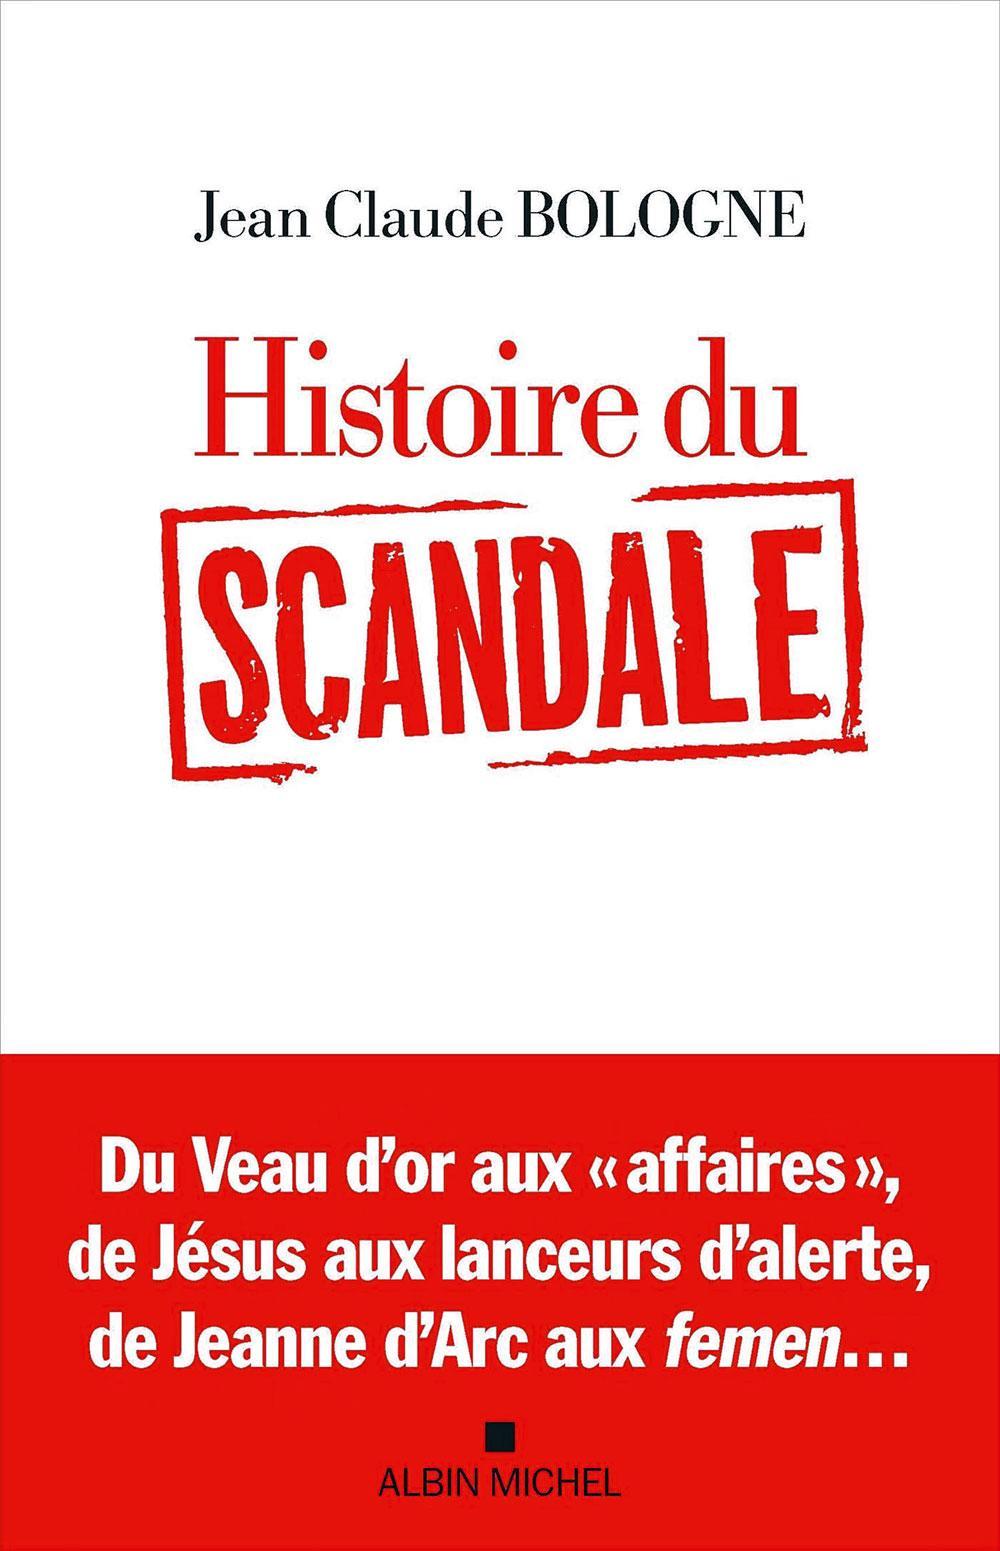 Histoire du scandale, par Jean Claude Bologne, Albin Michel, 304 p.